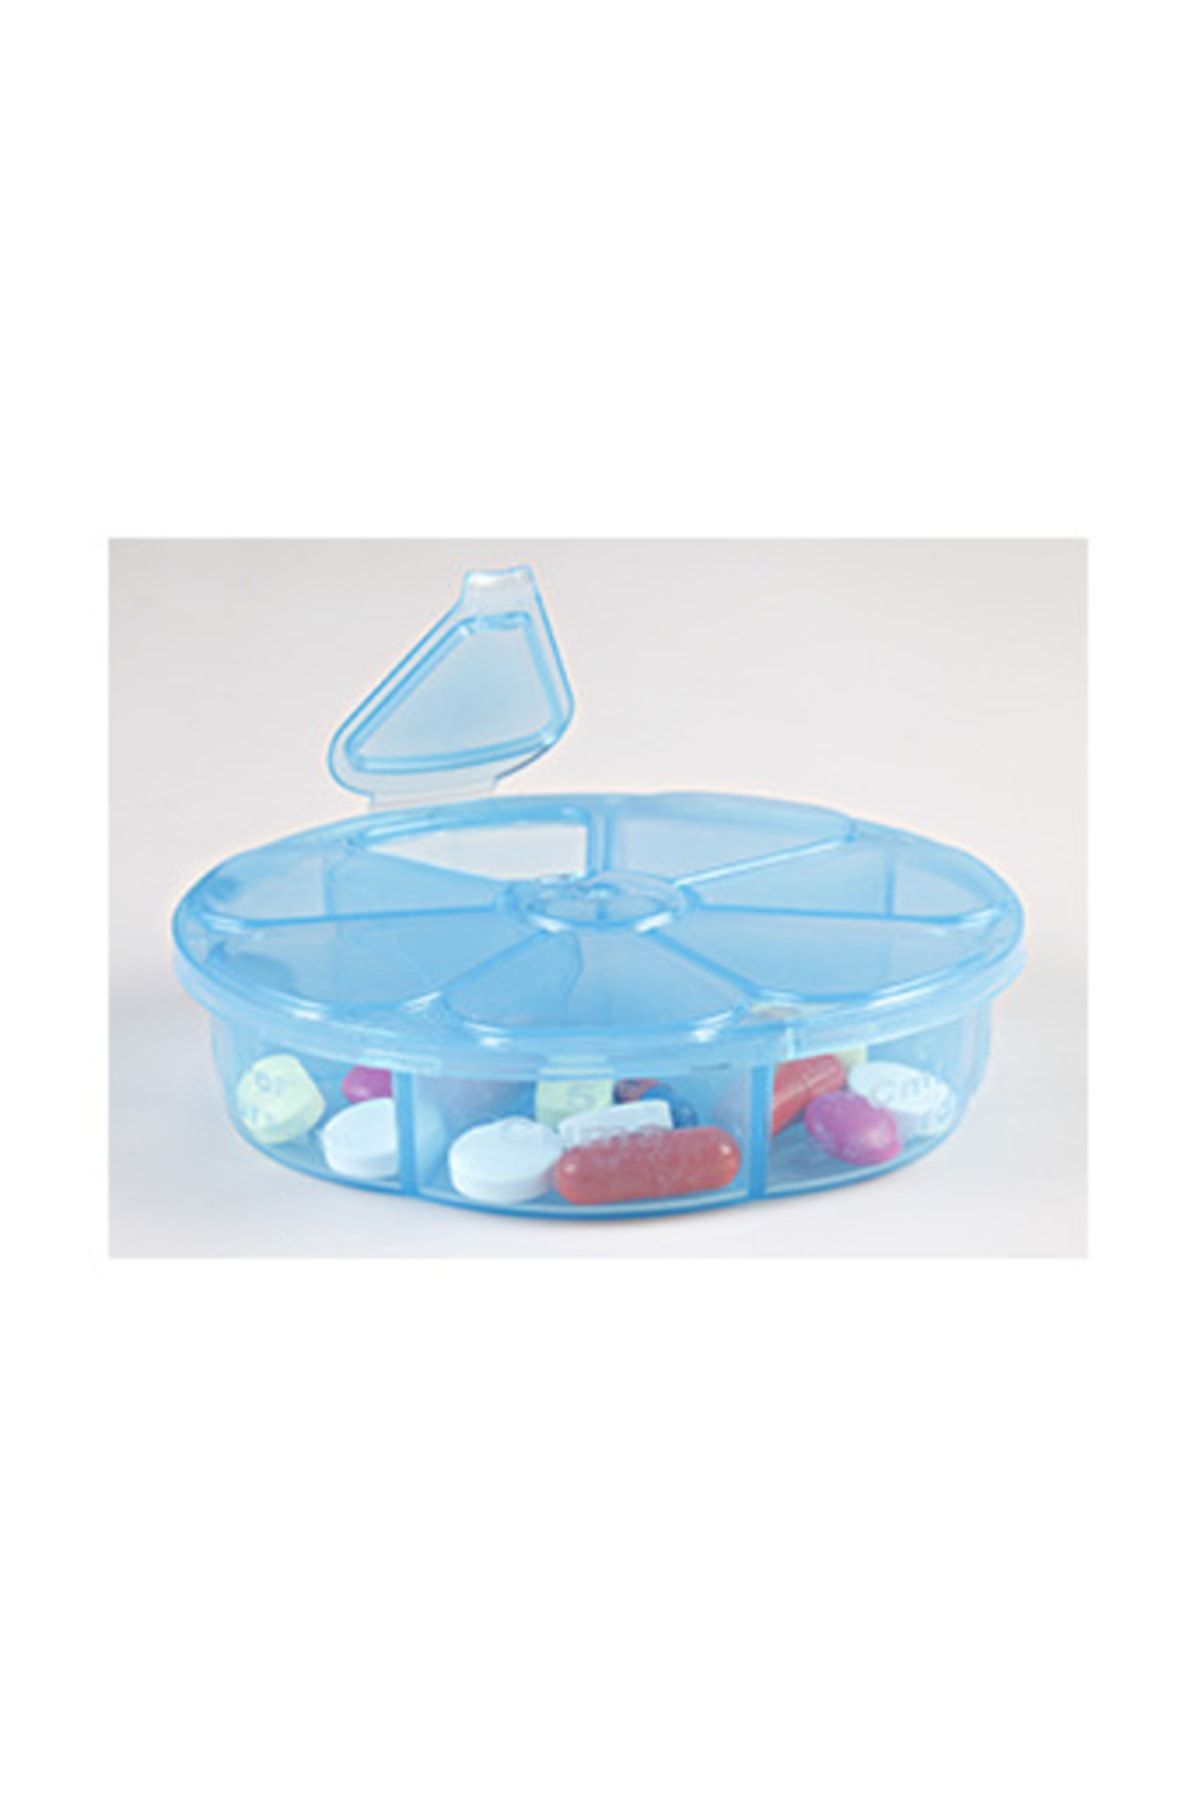 Çokuygunuz Plastik 7 Bölmeli Hazneli Kapaklı Ilaç Hap Saklama Kutusu Kutu